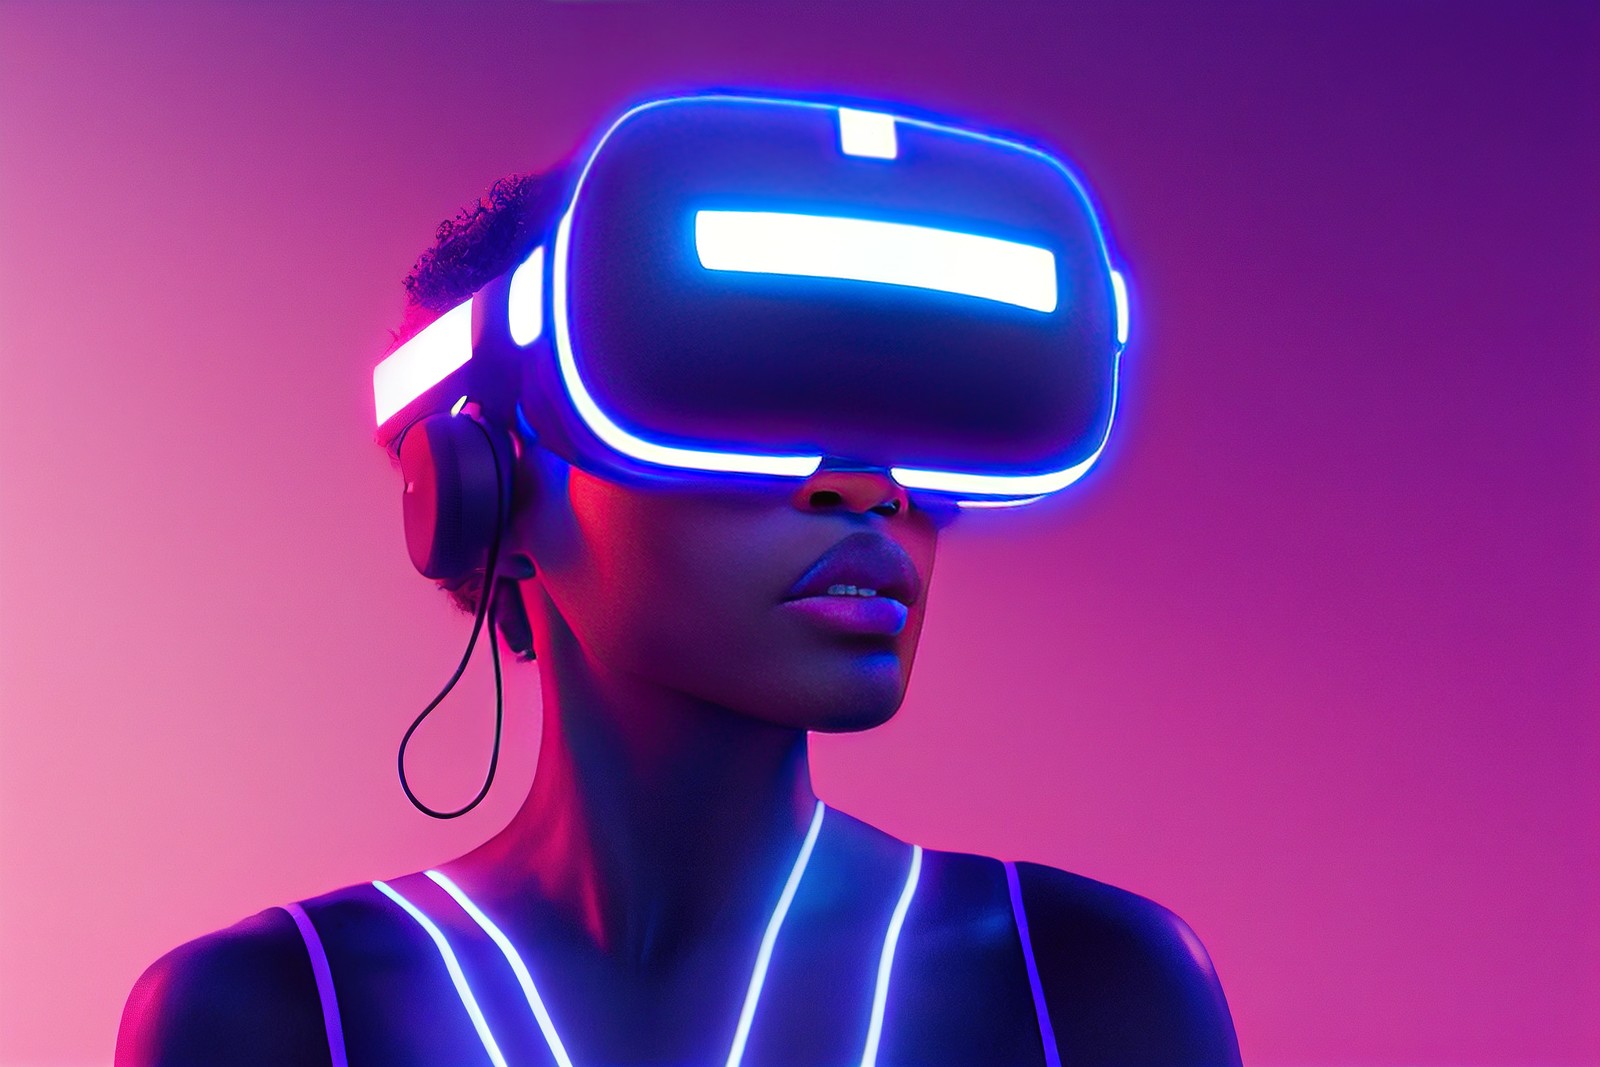 图片展示了一位女性佩戴着虚拟现实头盔和耳机，周围光线呈现紫色调，她似乎正在体验虚拟现实内容。